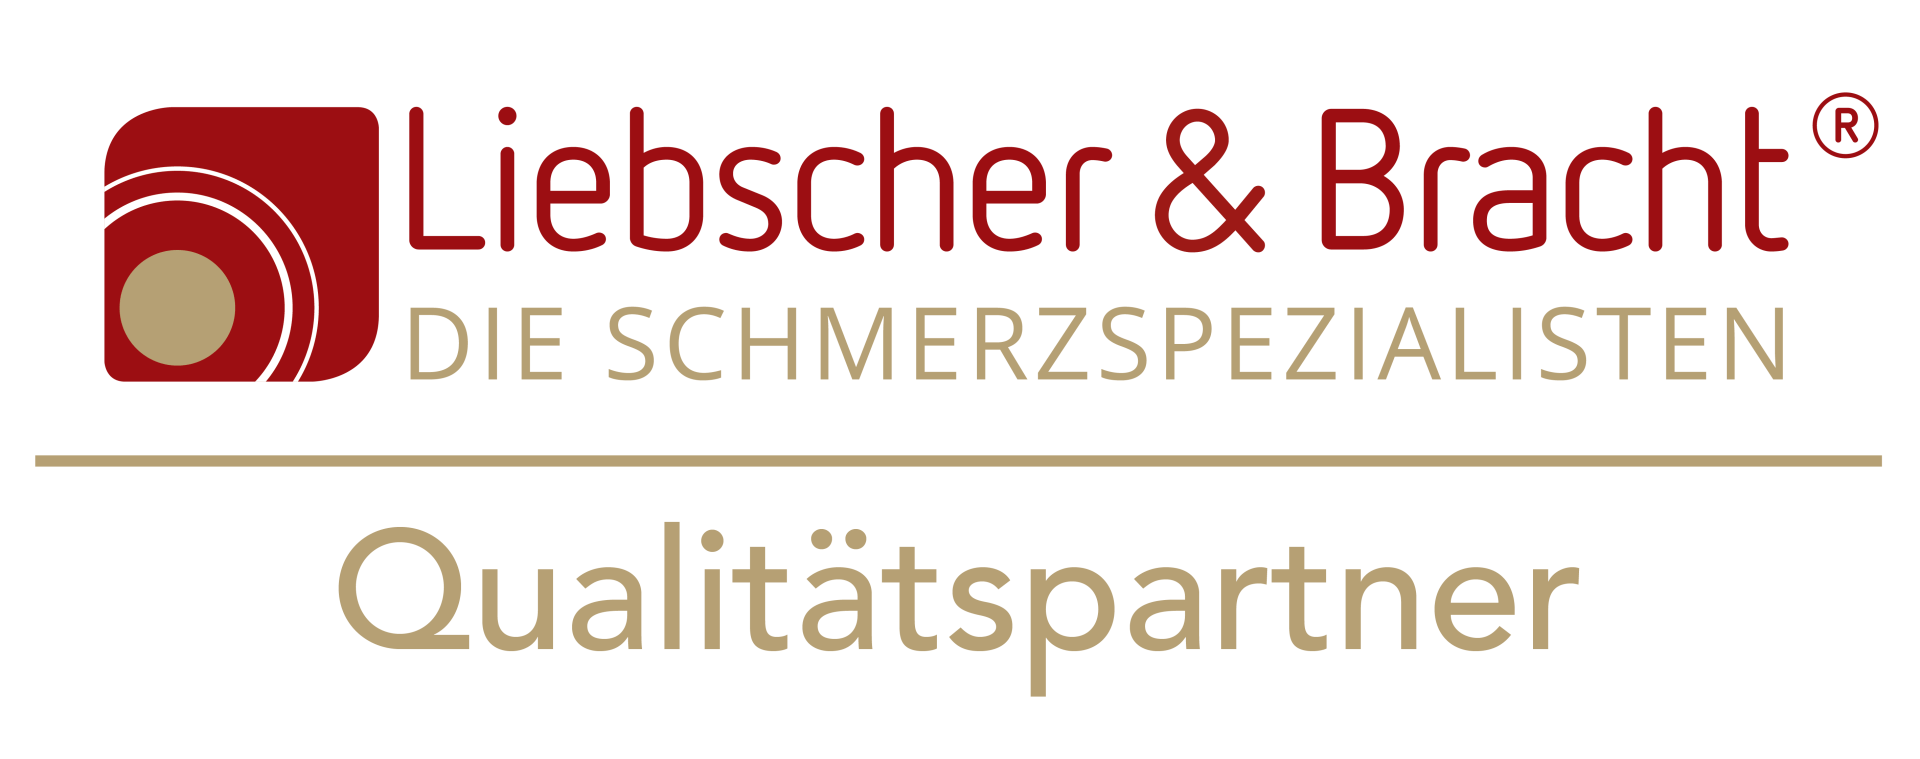 Logo Liebscher & Bracht, Schmerzspezialisten, Qualitätspartner